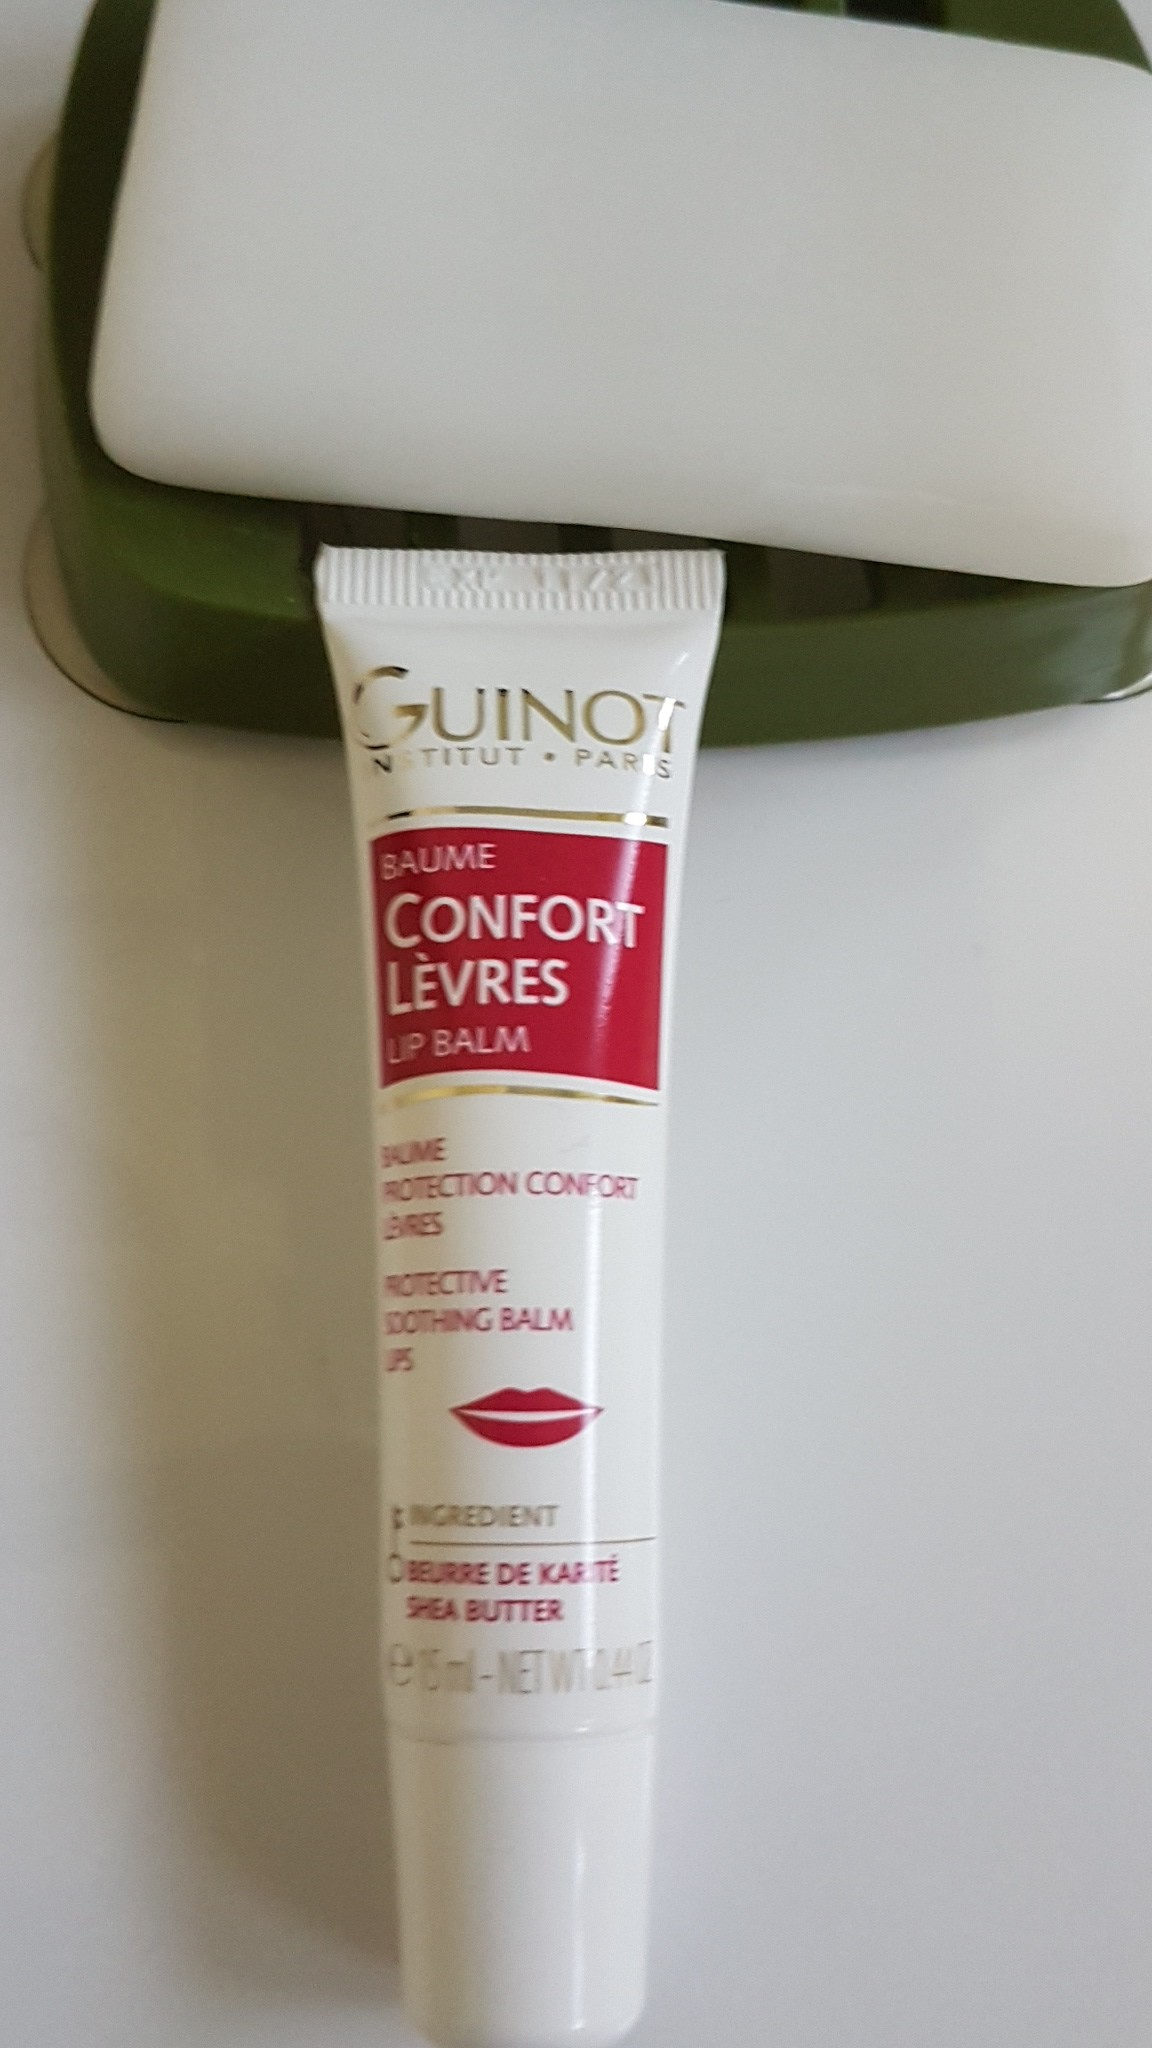 confort lèvres - Produkt - fr